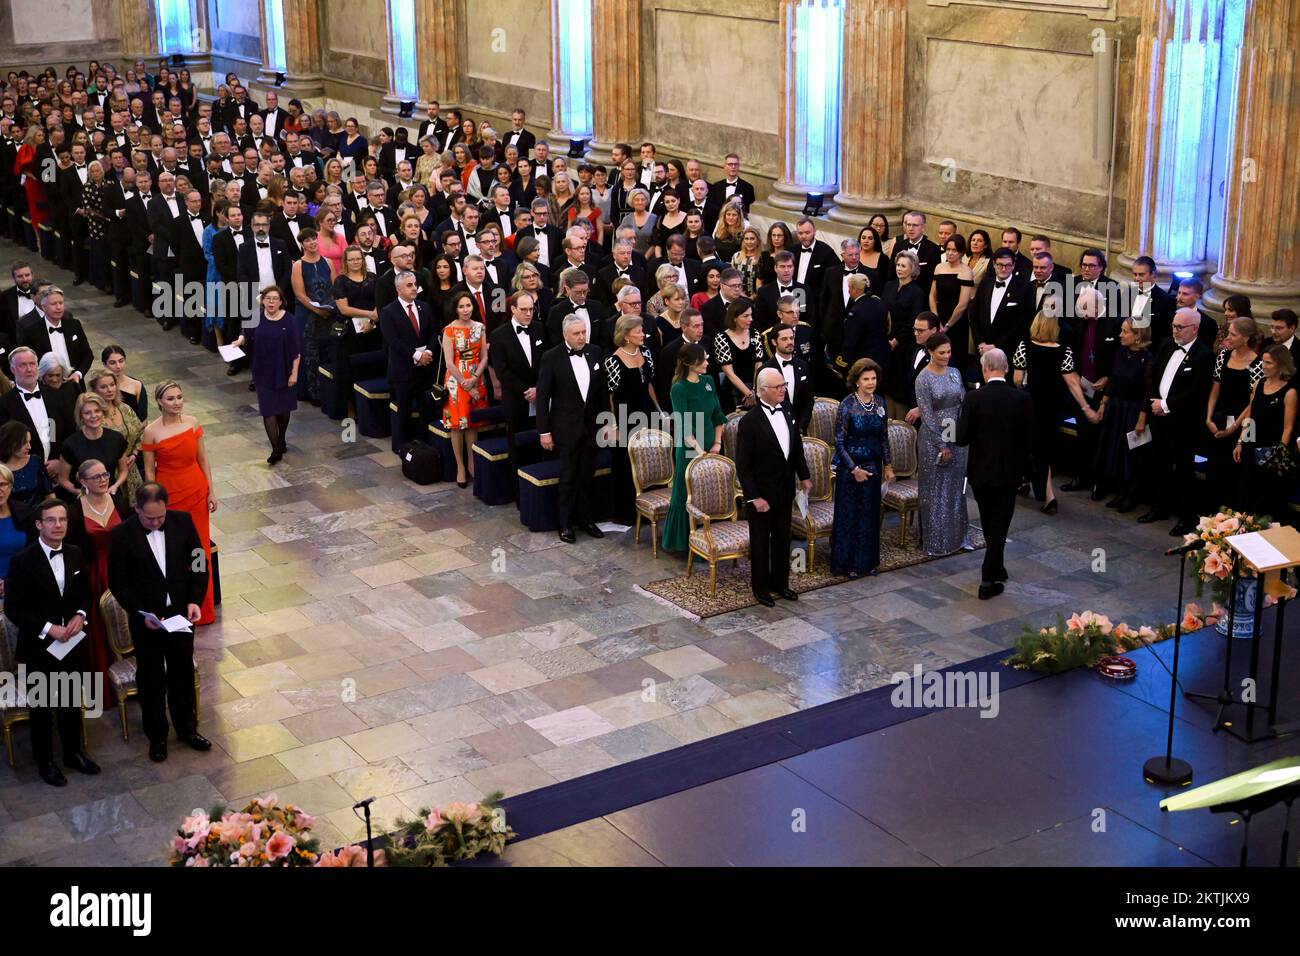 La famiglia reale di Svezia e i membri del Parlamento svedese durante un concerto presso il Palazzo reale di Stoccolma, Svezia, il 29 novembre 2022. P Foto Stock